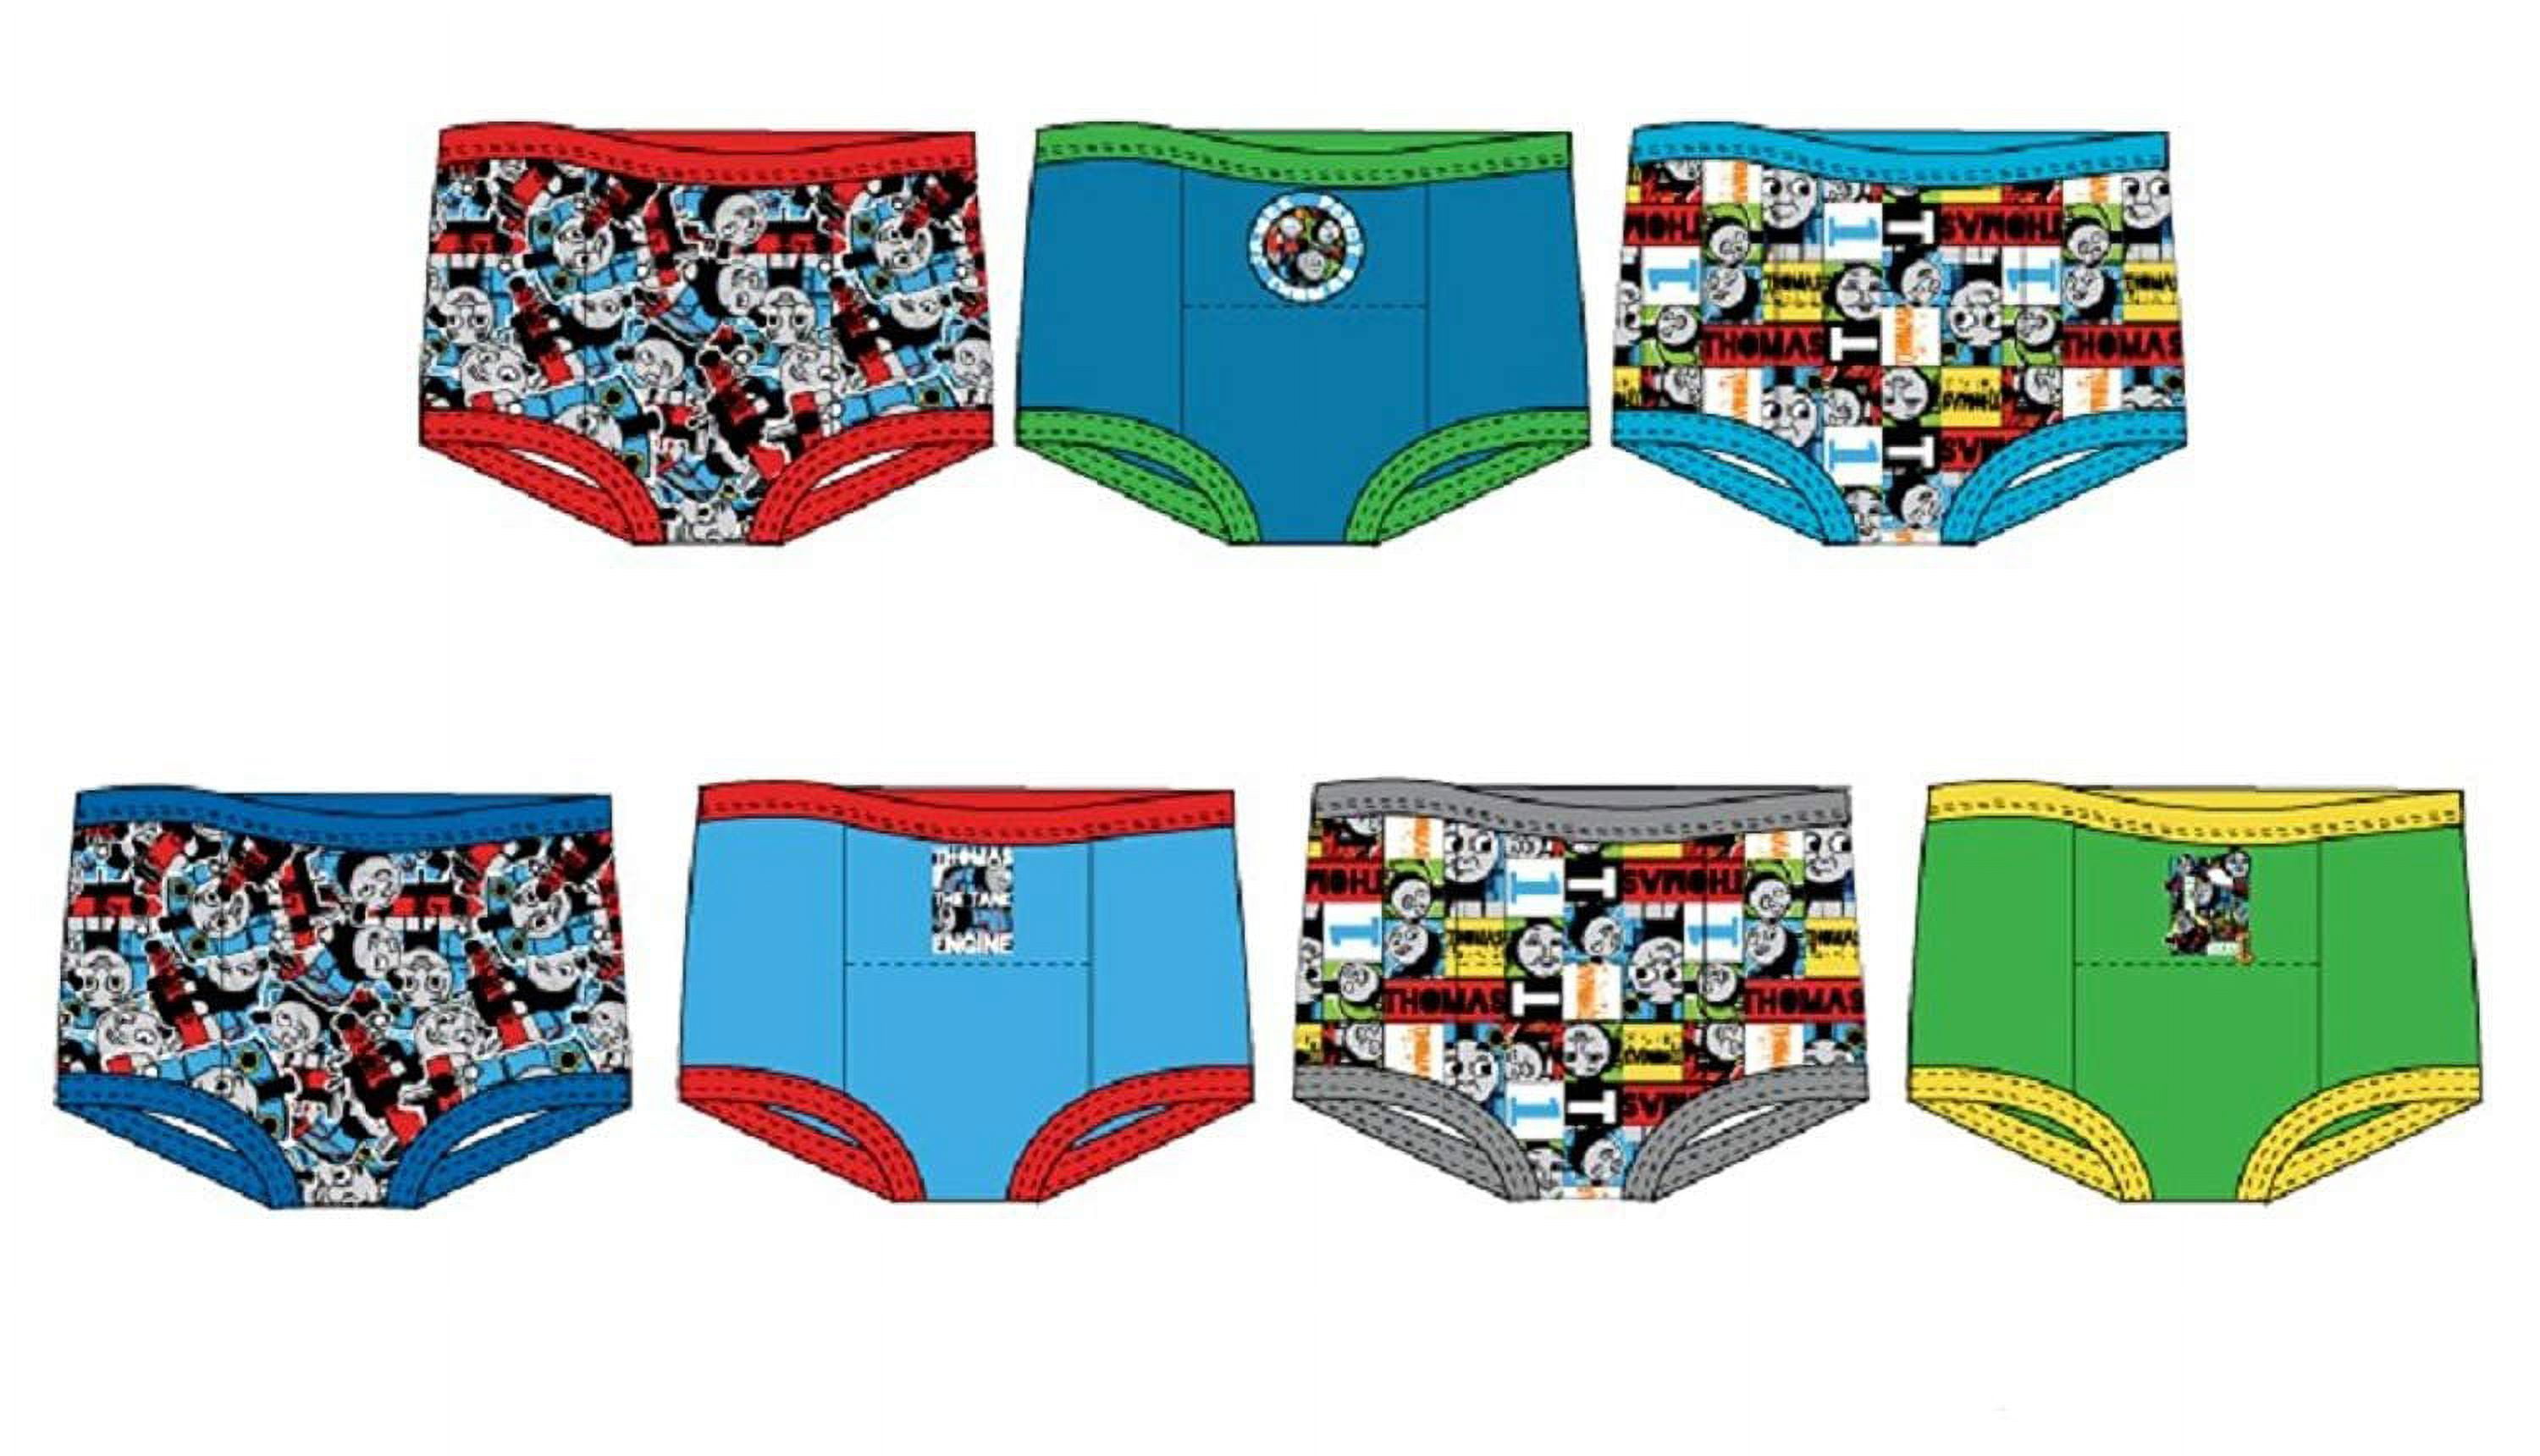 Sesame Street Toddler Boys Brief Underwear, 7-Pack 